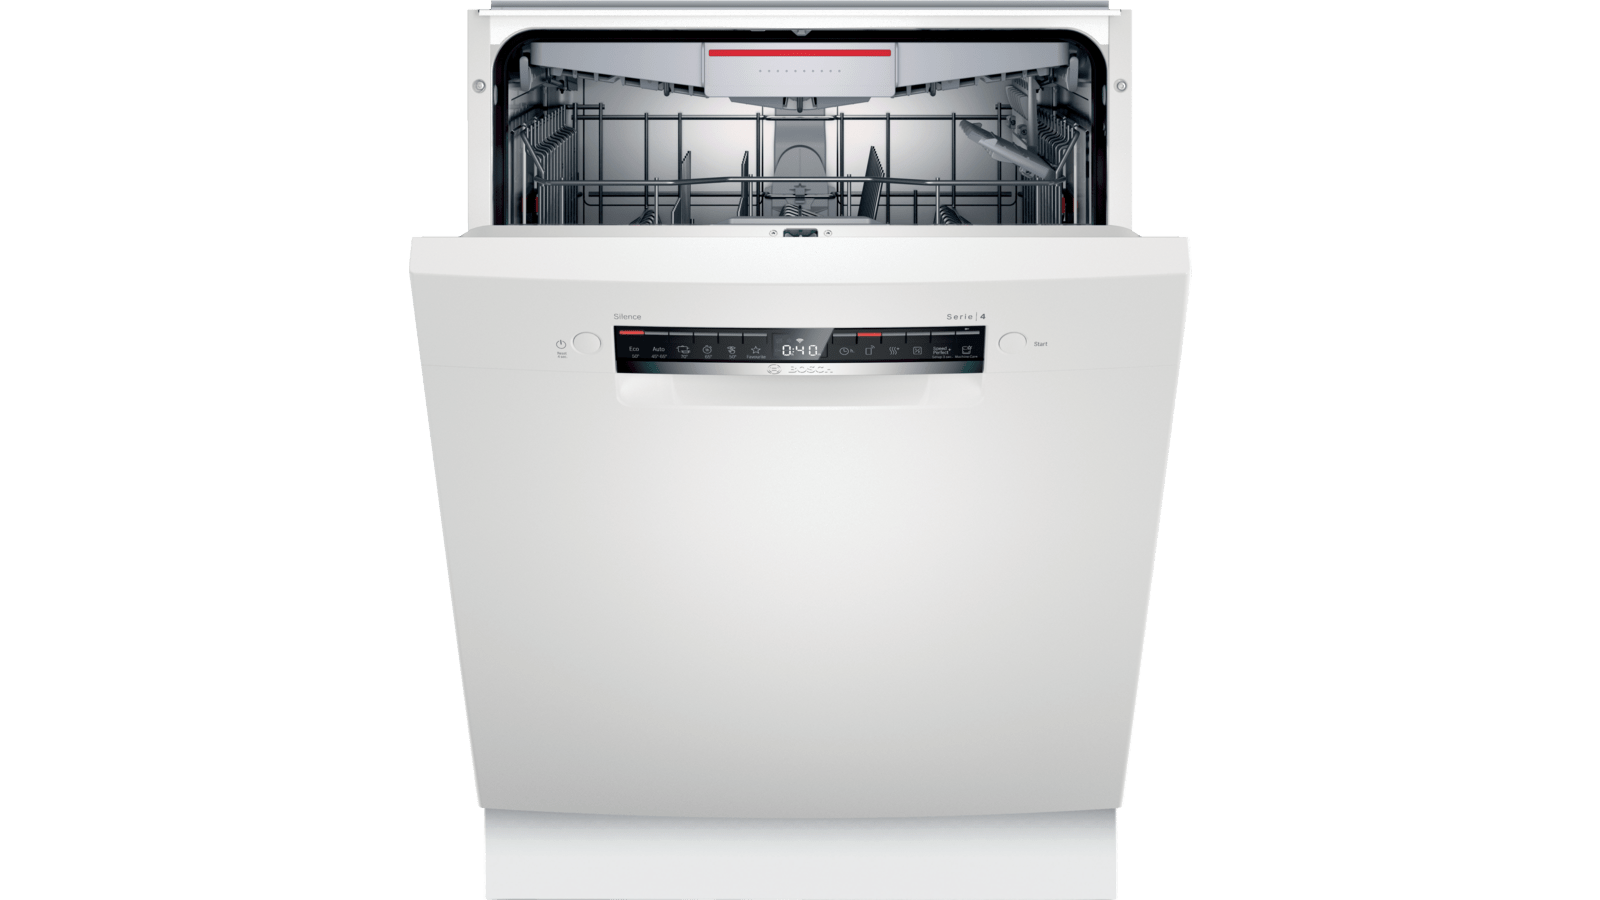 panik Disse Er SMU4HVW71S Opvaskemaskine til underbygning | Bosch DK